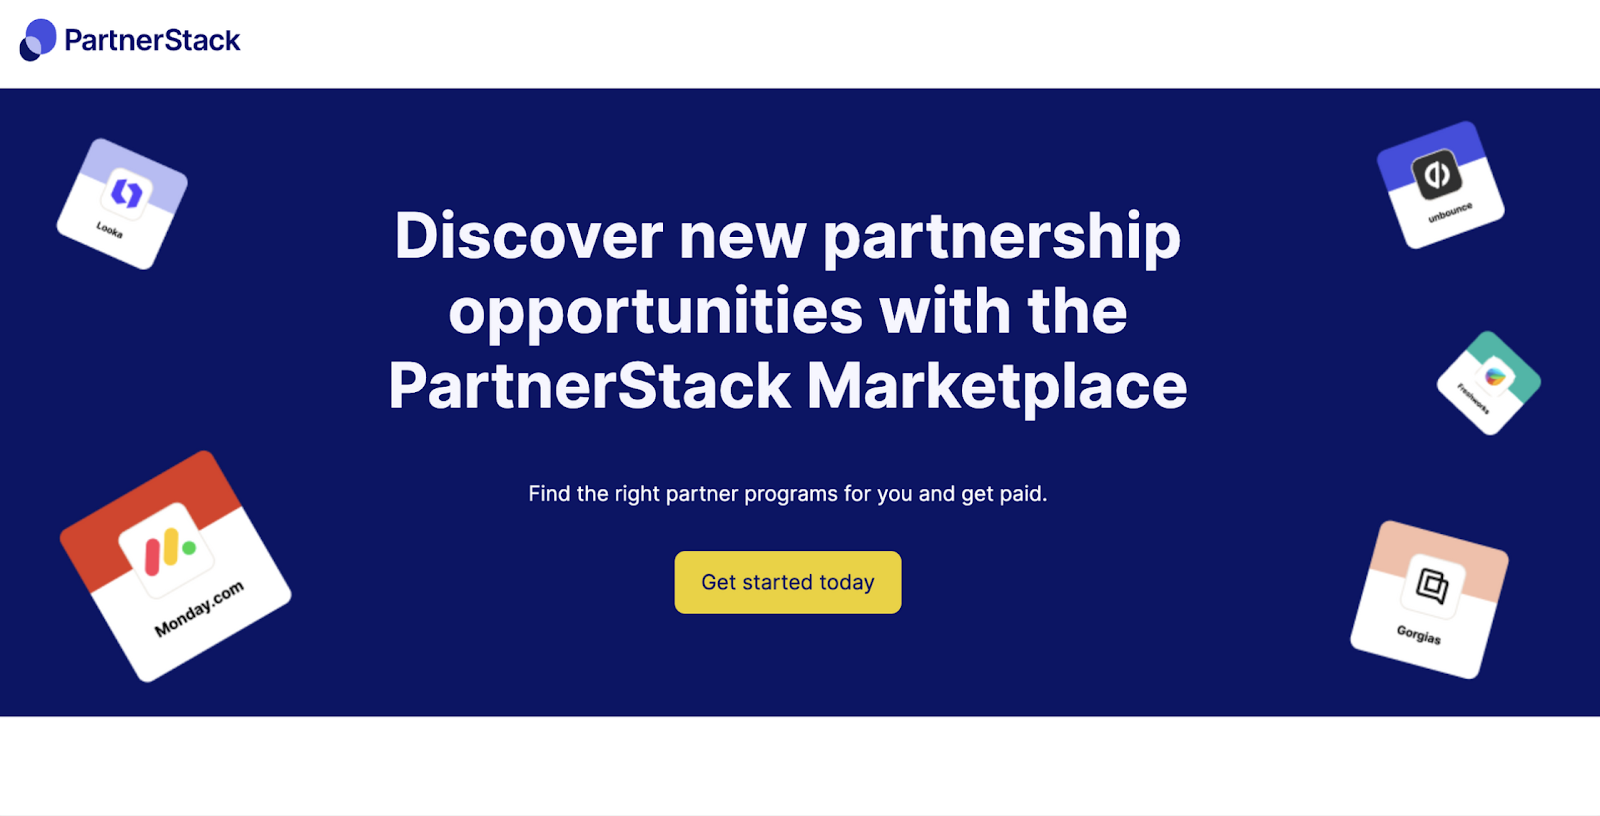 en iyi ortaklık programları: partnertack